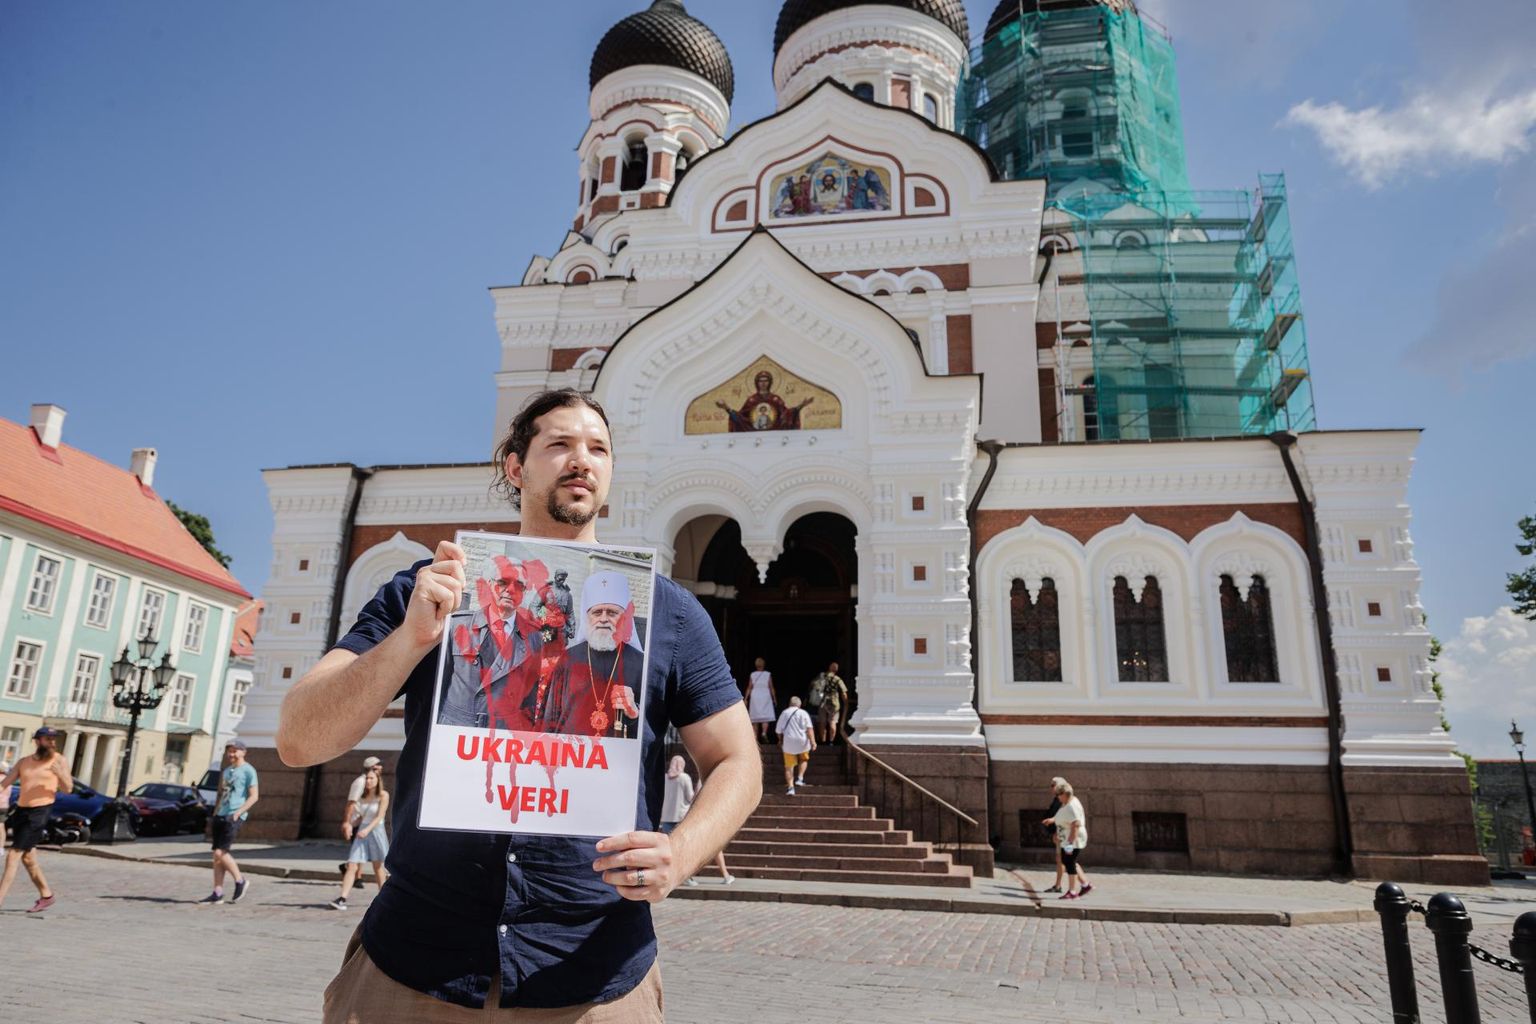 Maikuus käis Joosua Raave Nevski katedraali ees (pilt on tehtud juunis) protestimas «verise» plakatiga, millele on kirjutatud «Ukraina veri» ja peal foto, millel metropoliit Eugeni poseerib pronkssõduri taustal koos Venemaa suursaadikuga.